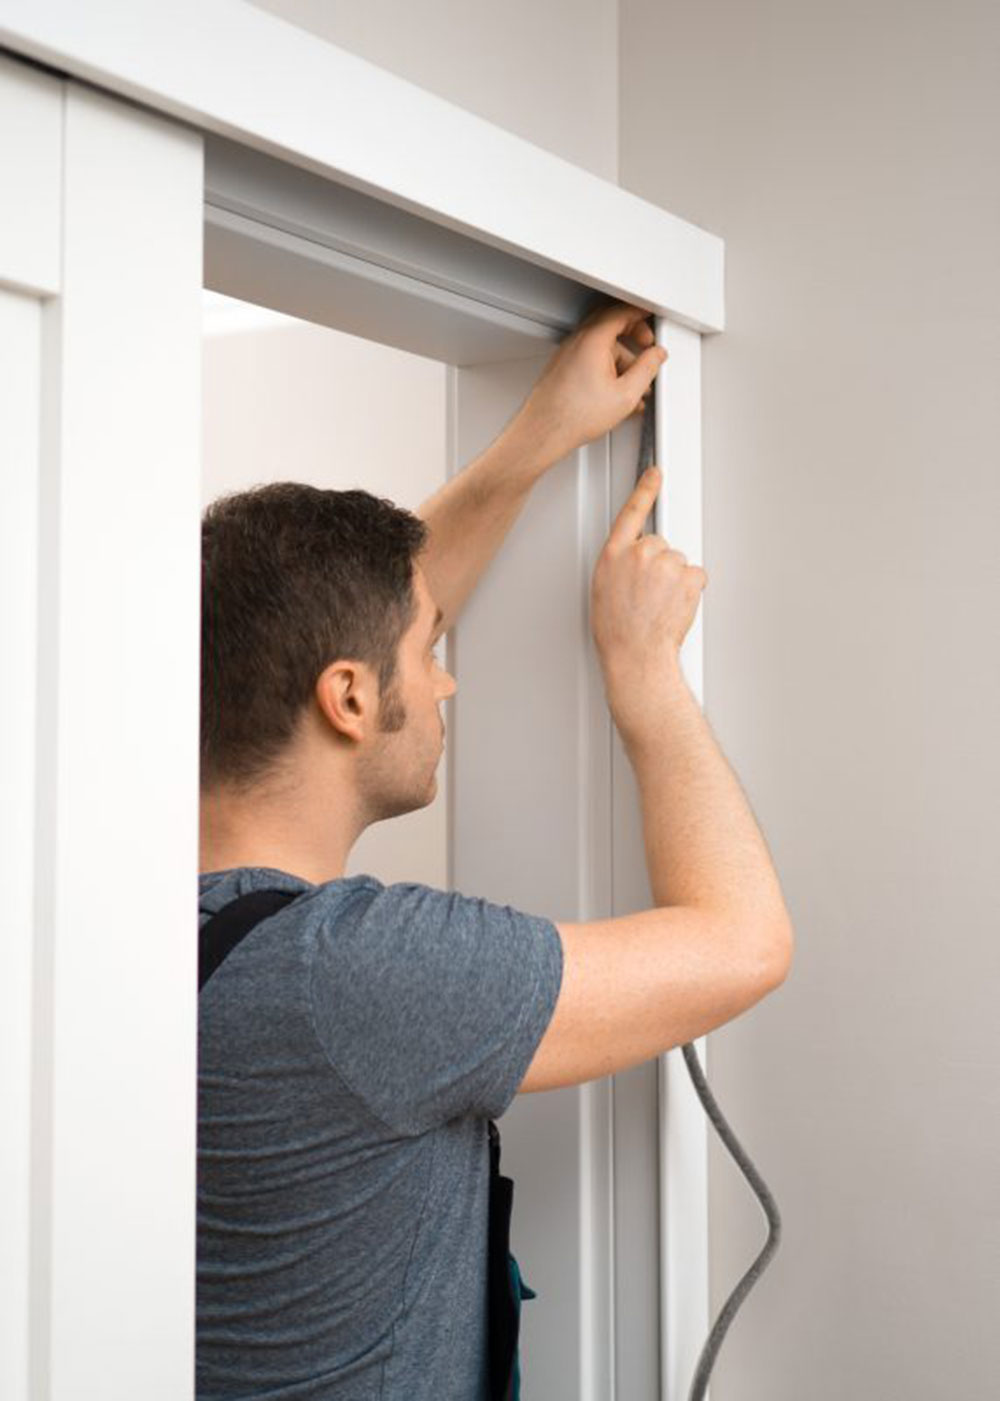 rubber-gasket How to soundproof a bedroom door quickly